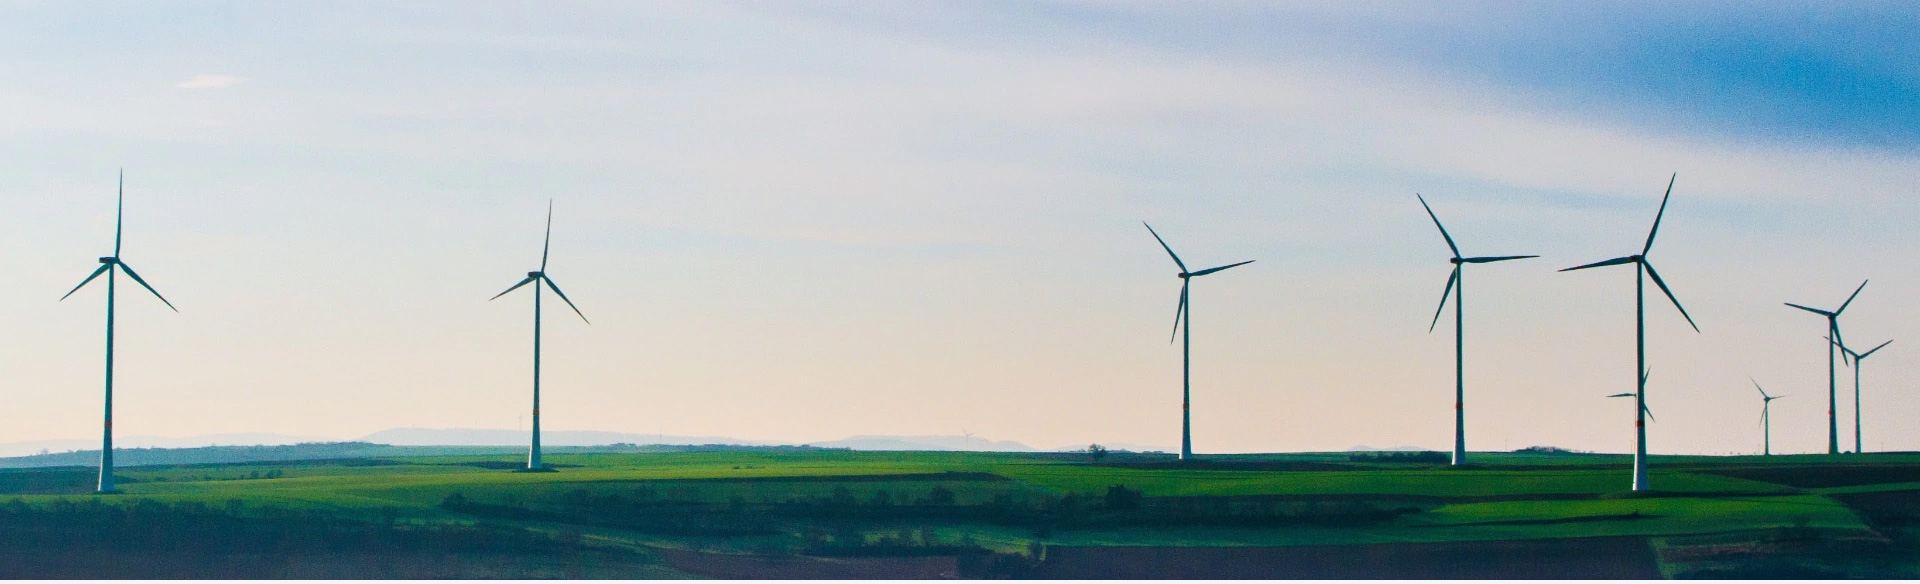 グリーン水素から始まり、風力から再生可能エネルギーが生まれます。 - ヒョンデモビリティジャパン ブランドストーリー